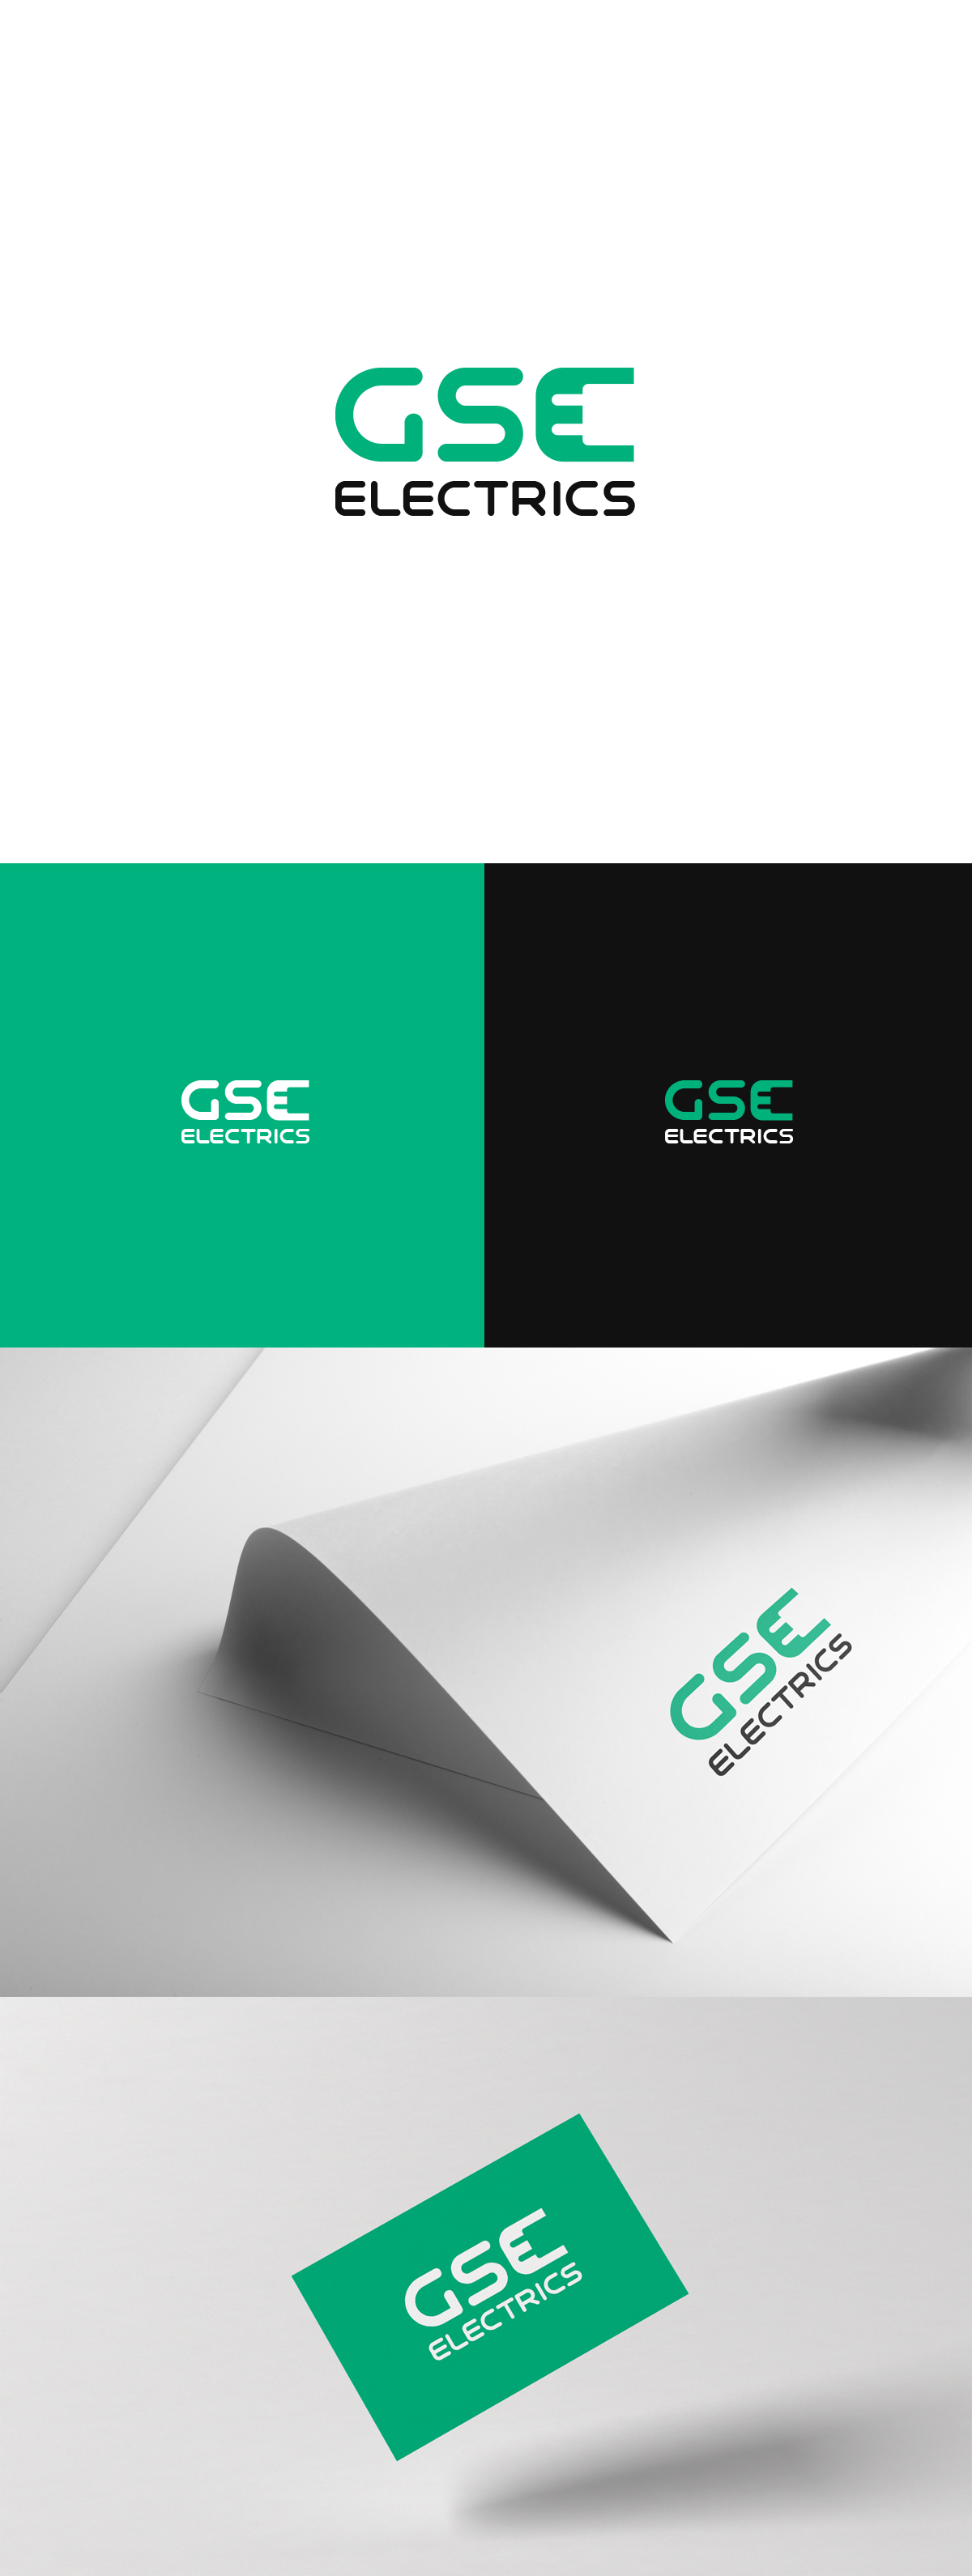 gse-logo.jpg